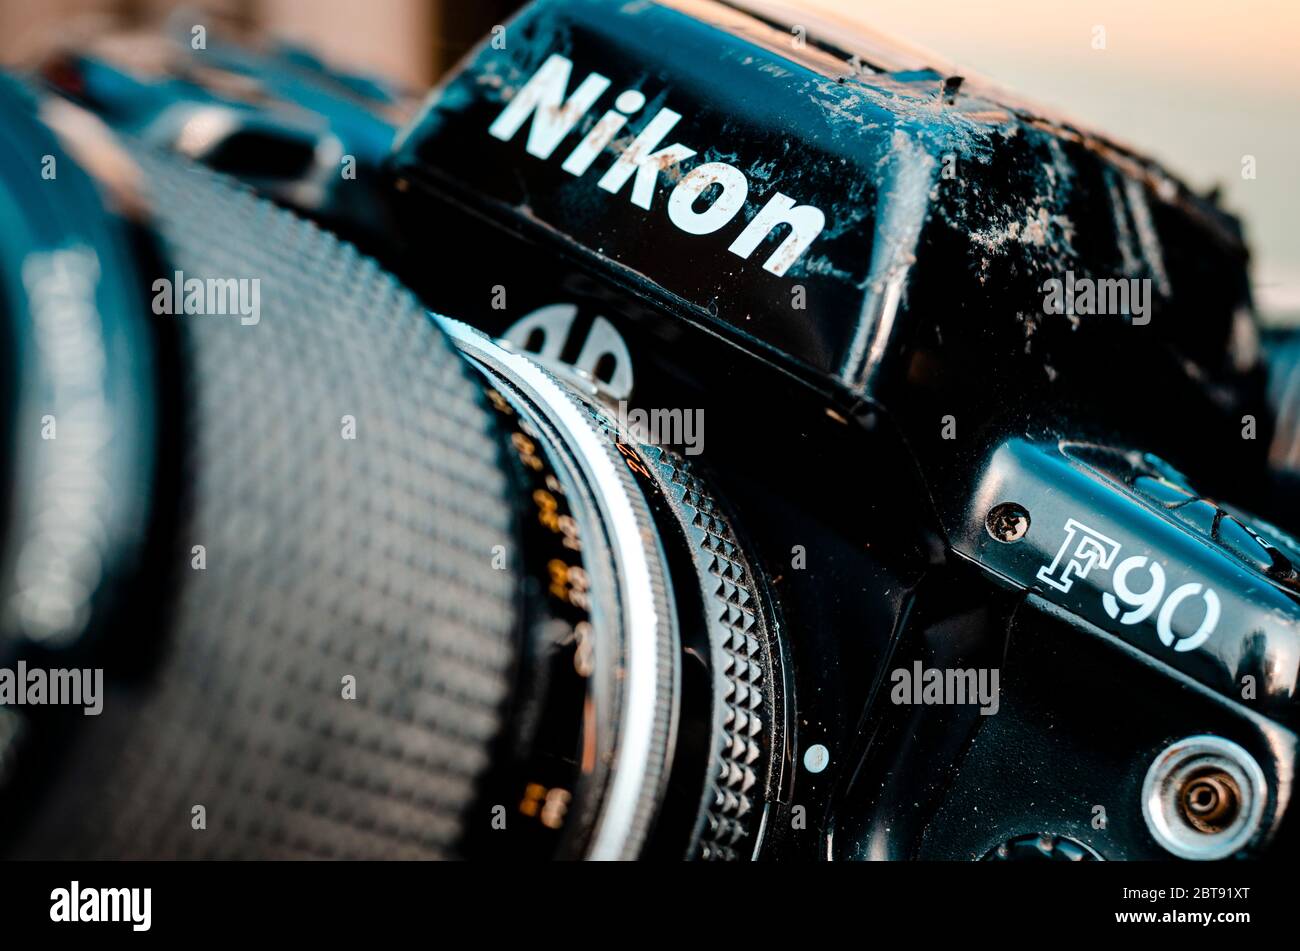 Nikon F90 appareil photo à film professionnel reflex 35 mm, lancé en 1992 et resté en production jusqu'en 2001 Banque D'Images